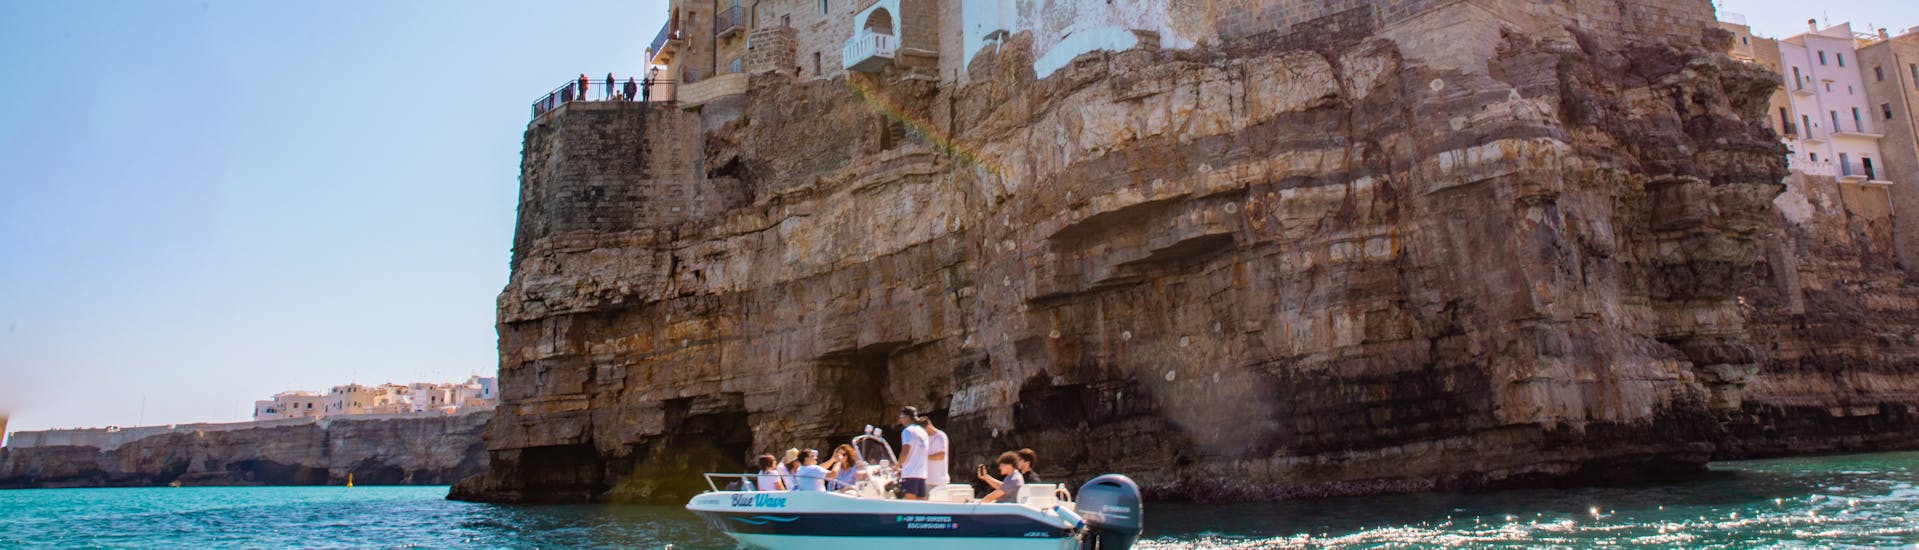 La barca di Blue Wave che costeggia Polignano a Mare durante la gita in barca alle grotte di Polignano a Mare con aperitivo con Blue Wave.